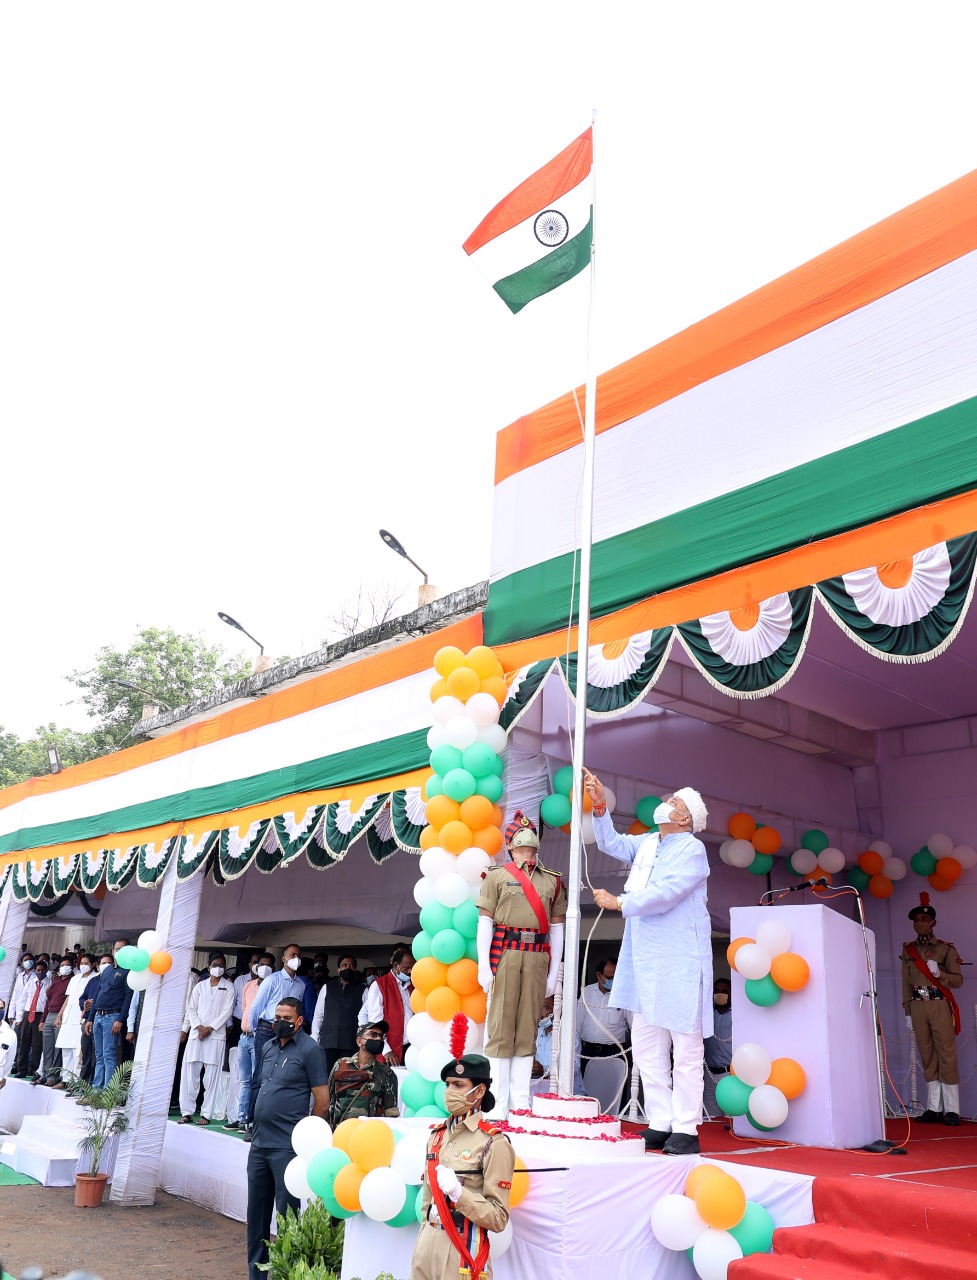 रायगढ़ :  स्वतंत्रता दिवस पर कृषि मंत्री श्री रविन्द्र चौबे ने रायगढ़ में किया ध्वजारोहण :   रायगढ़ जिले में हर्षोल्लास के साथ मनाया गया स्वतंत्रता दिवस